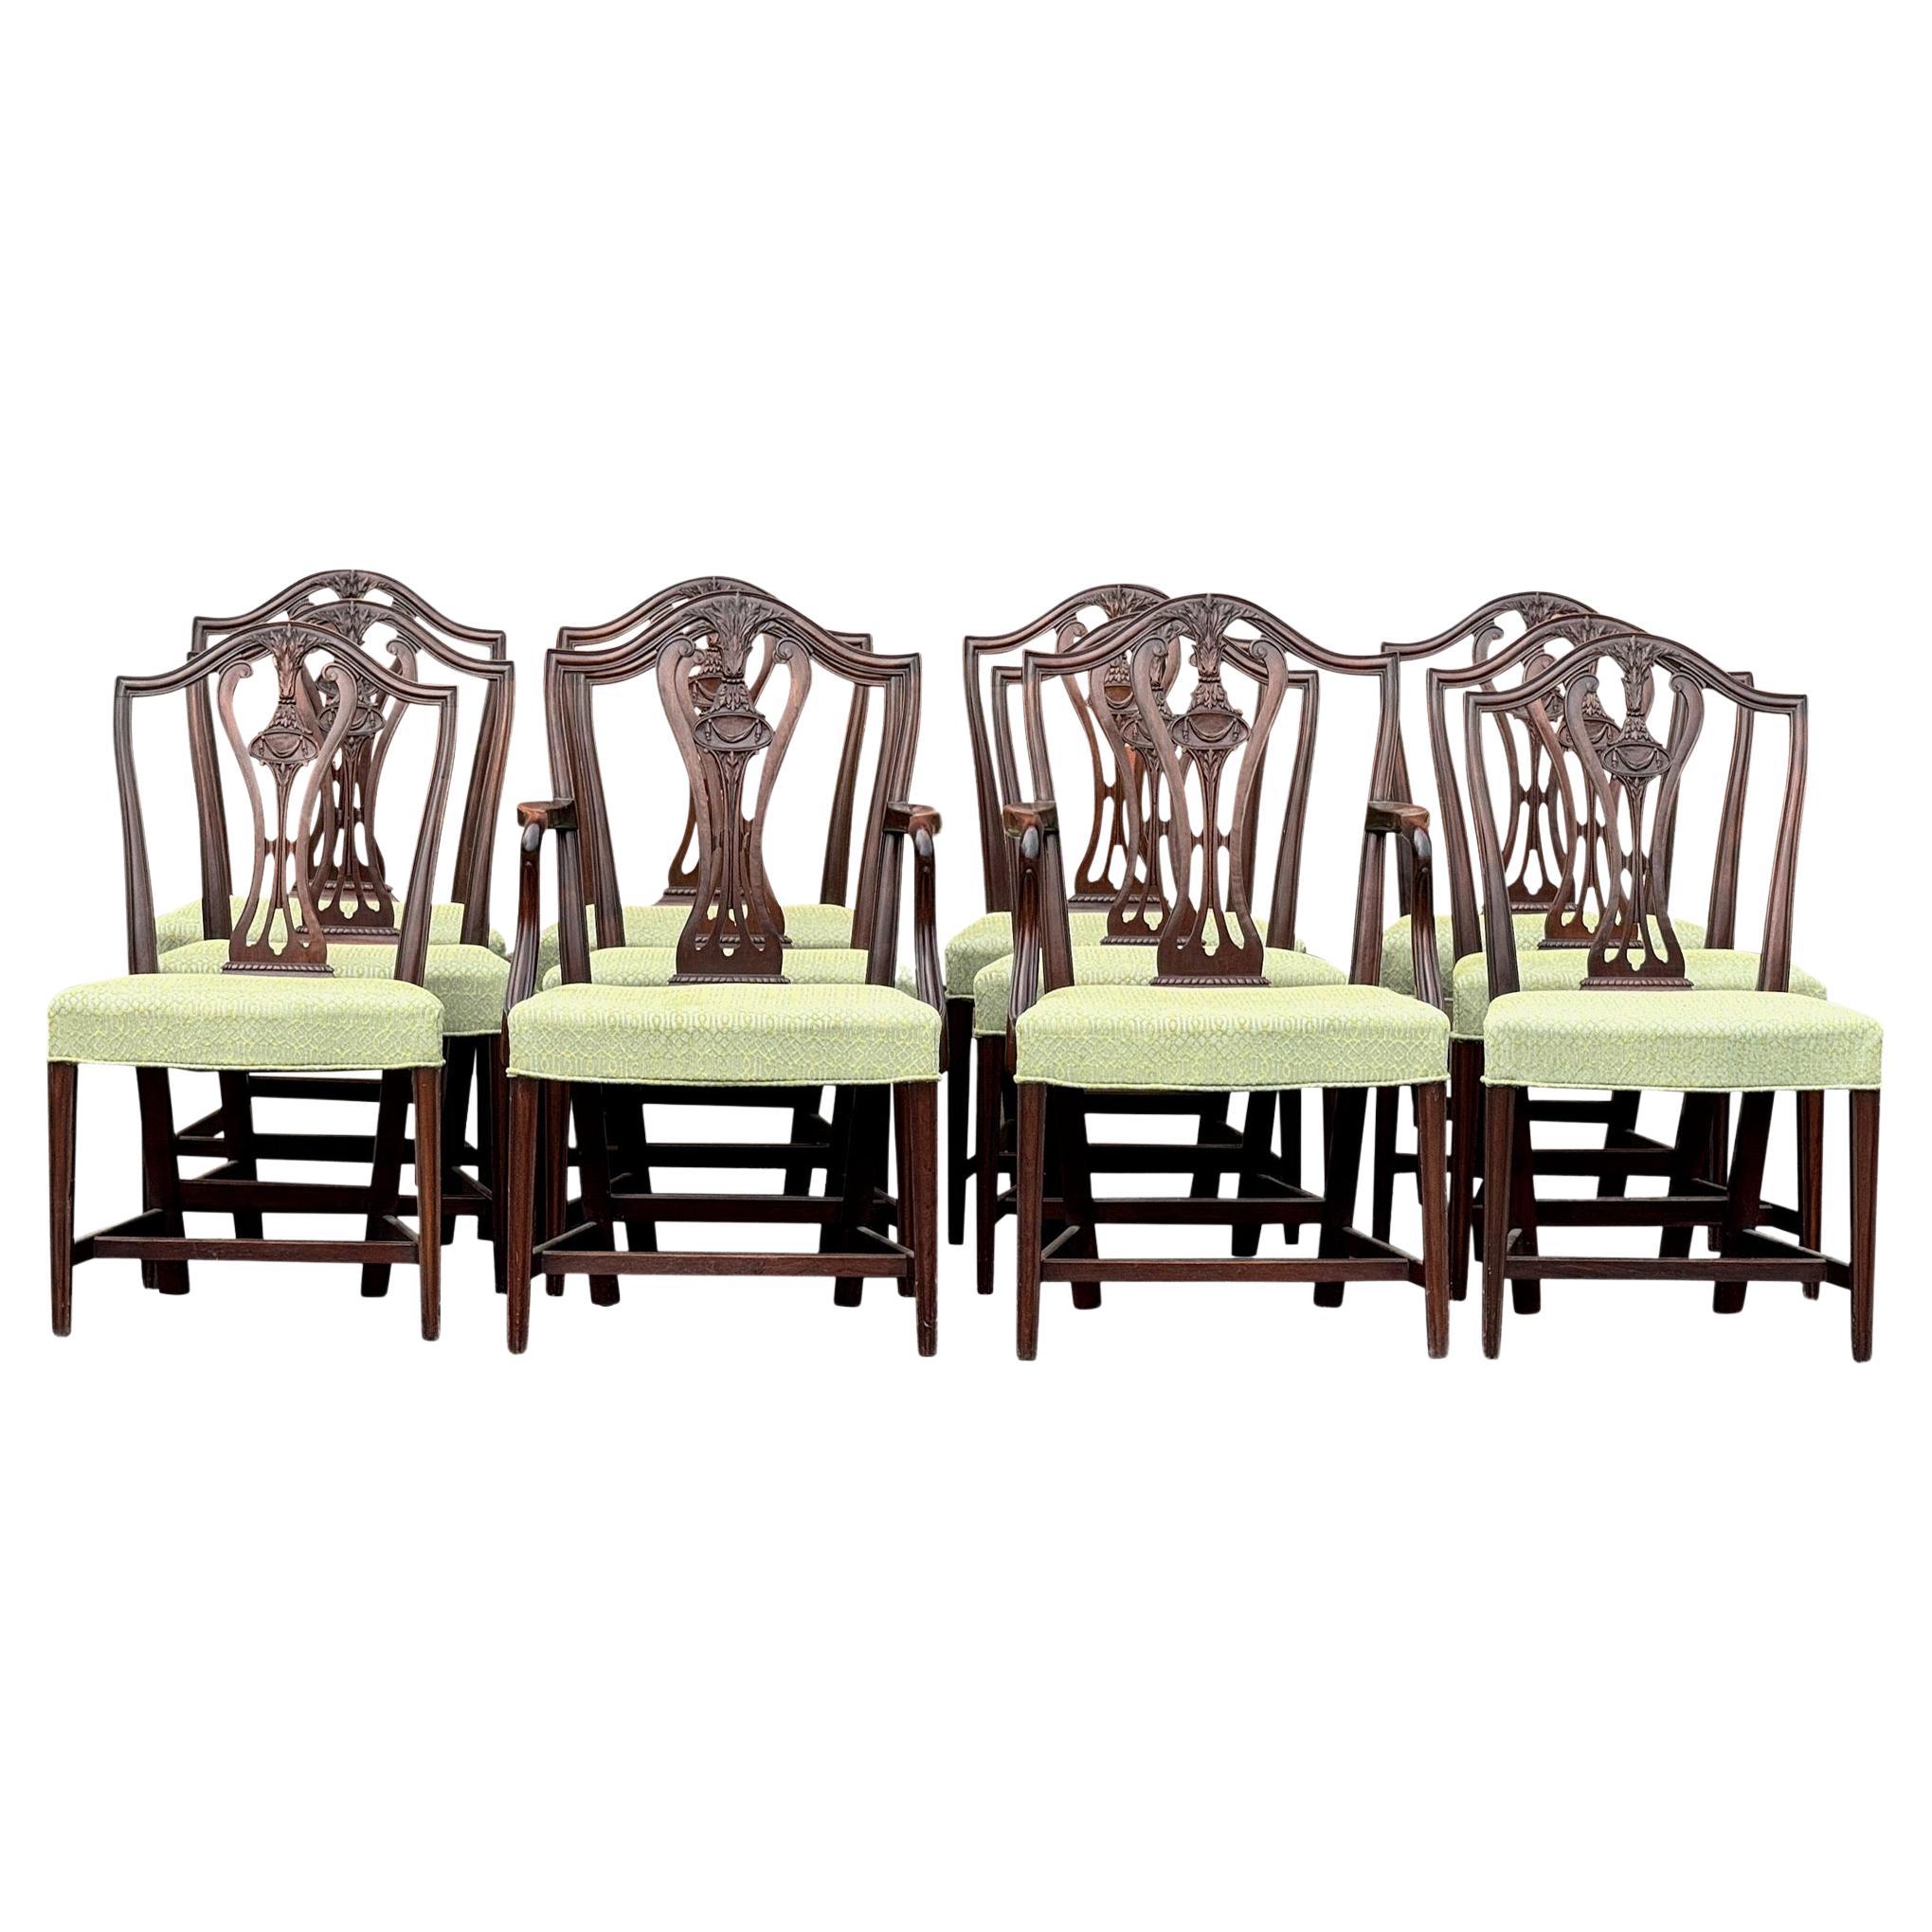 Fin du 19e siècle - Ensemble de douze chaises de salle à manger en acajou